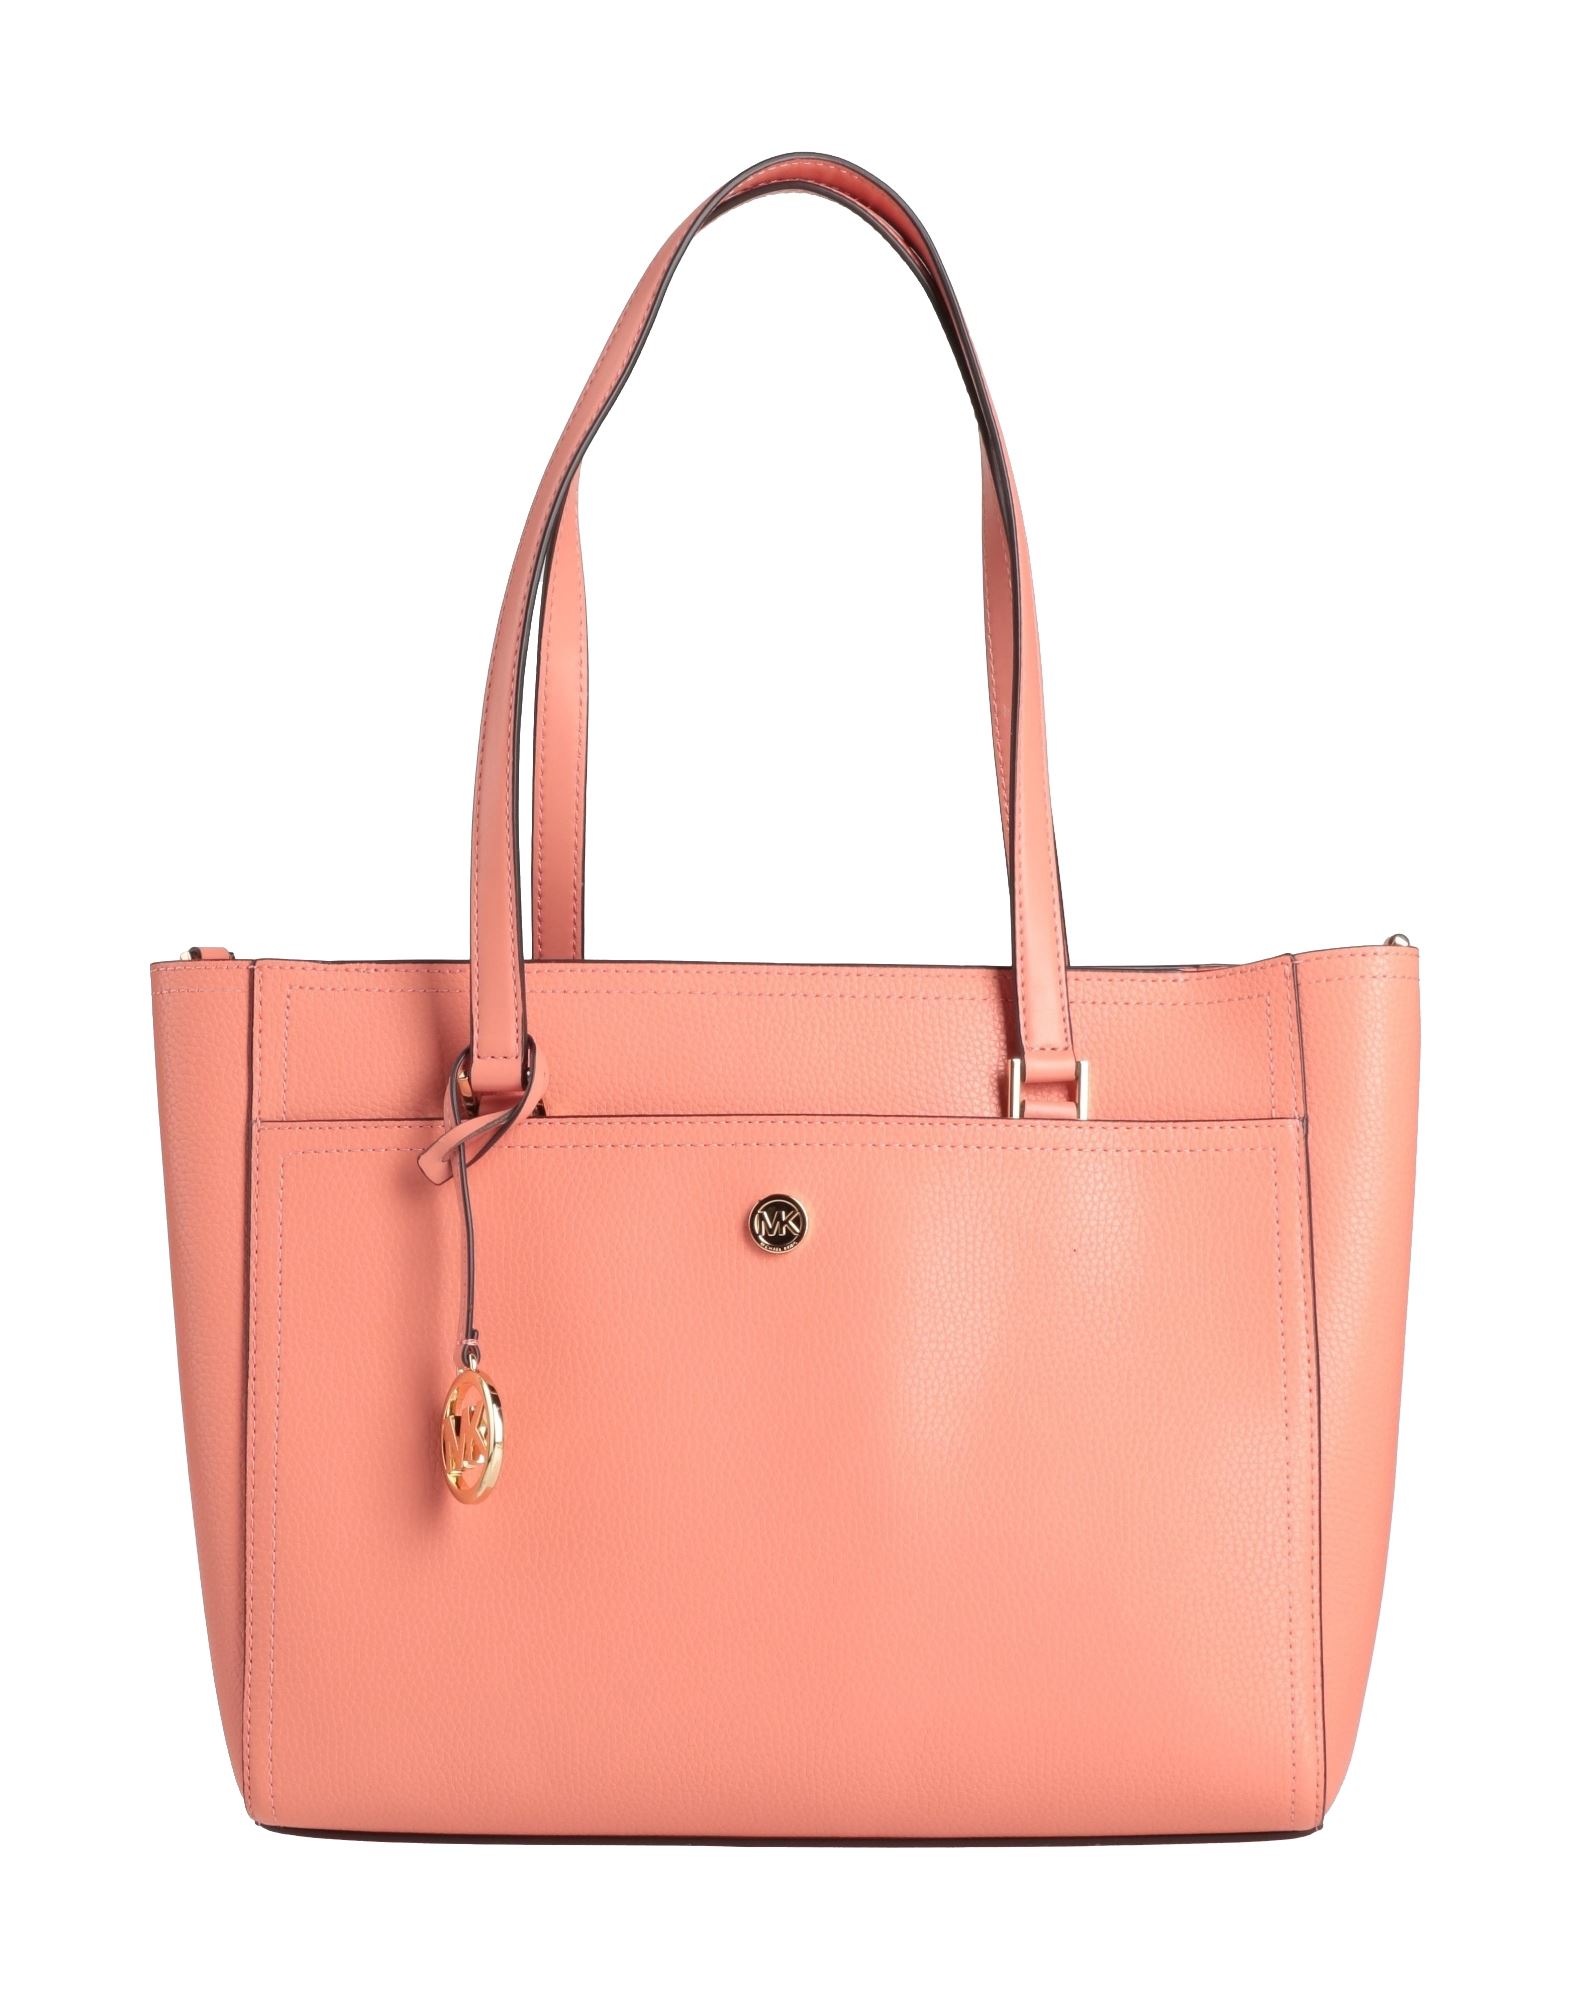 Michael Michael Kors Handbags In Pink